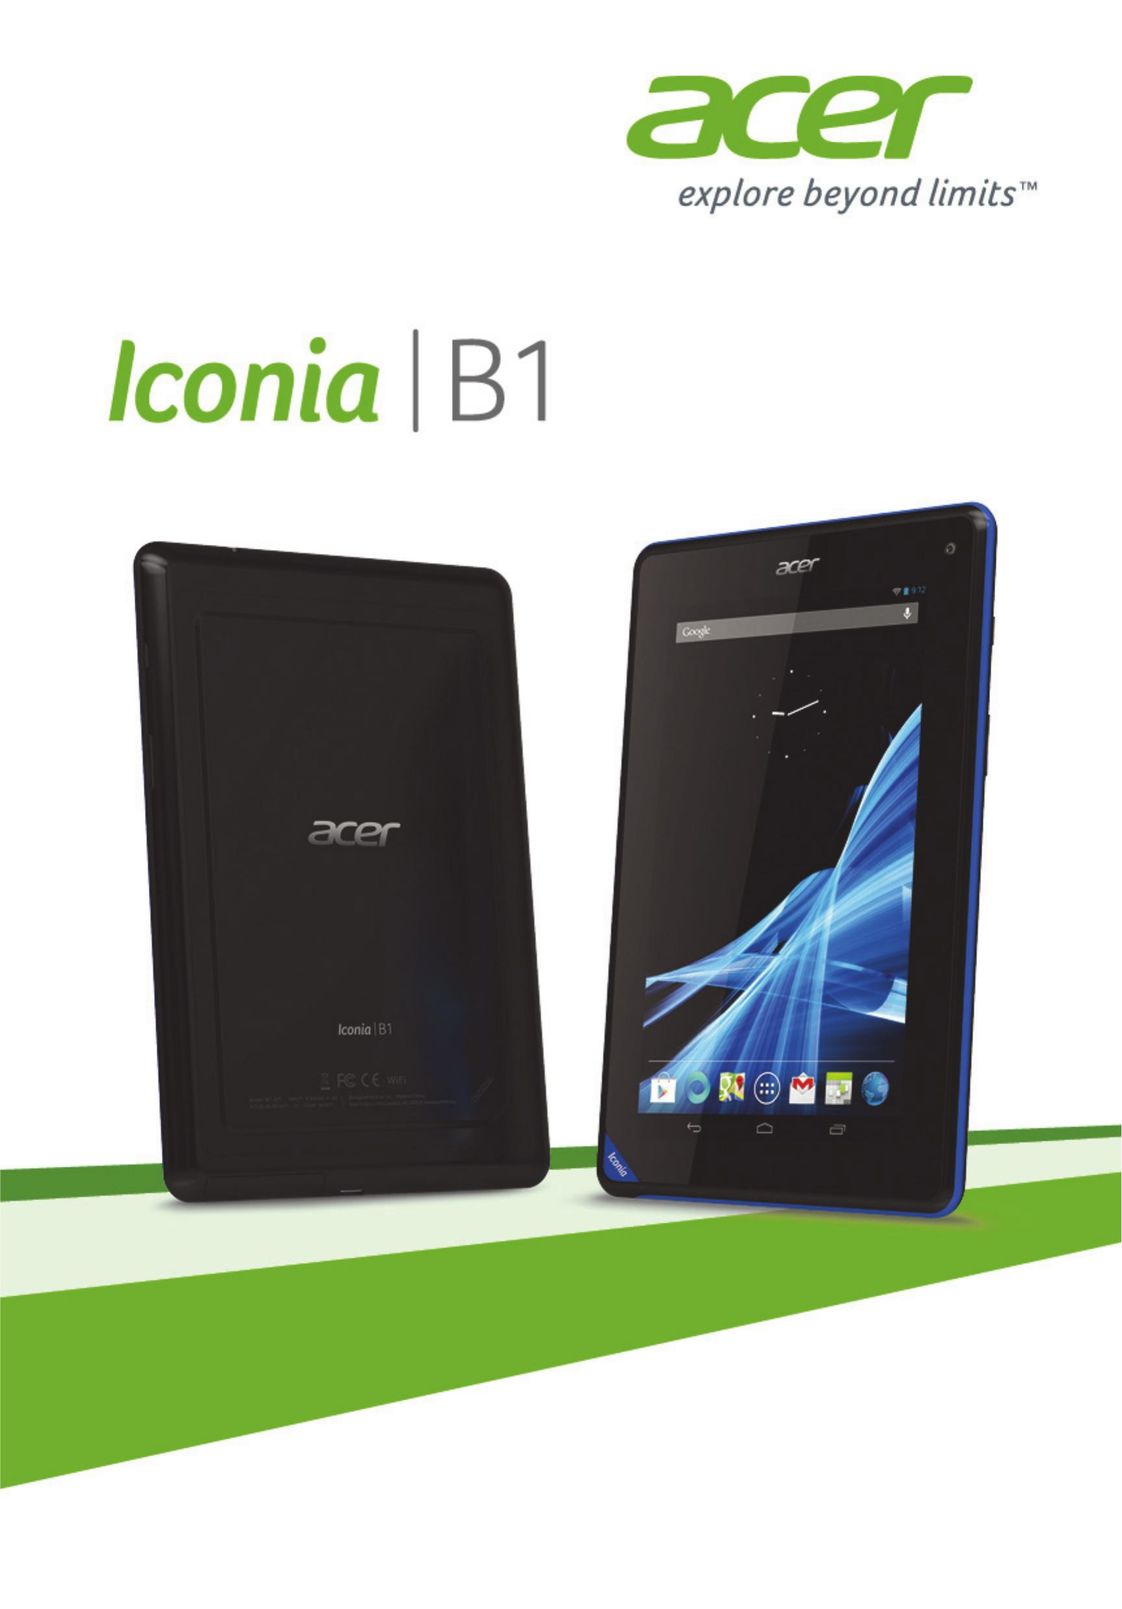 Acer B1-720-L864 Tablet User Manual